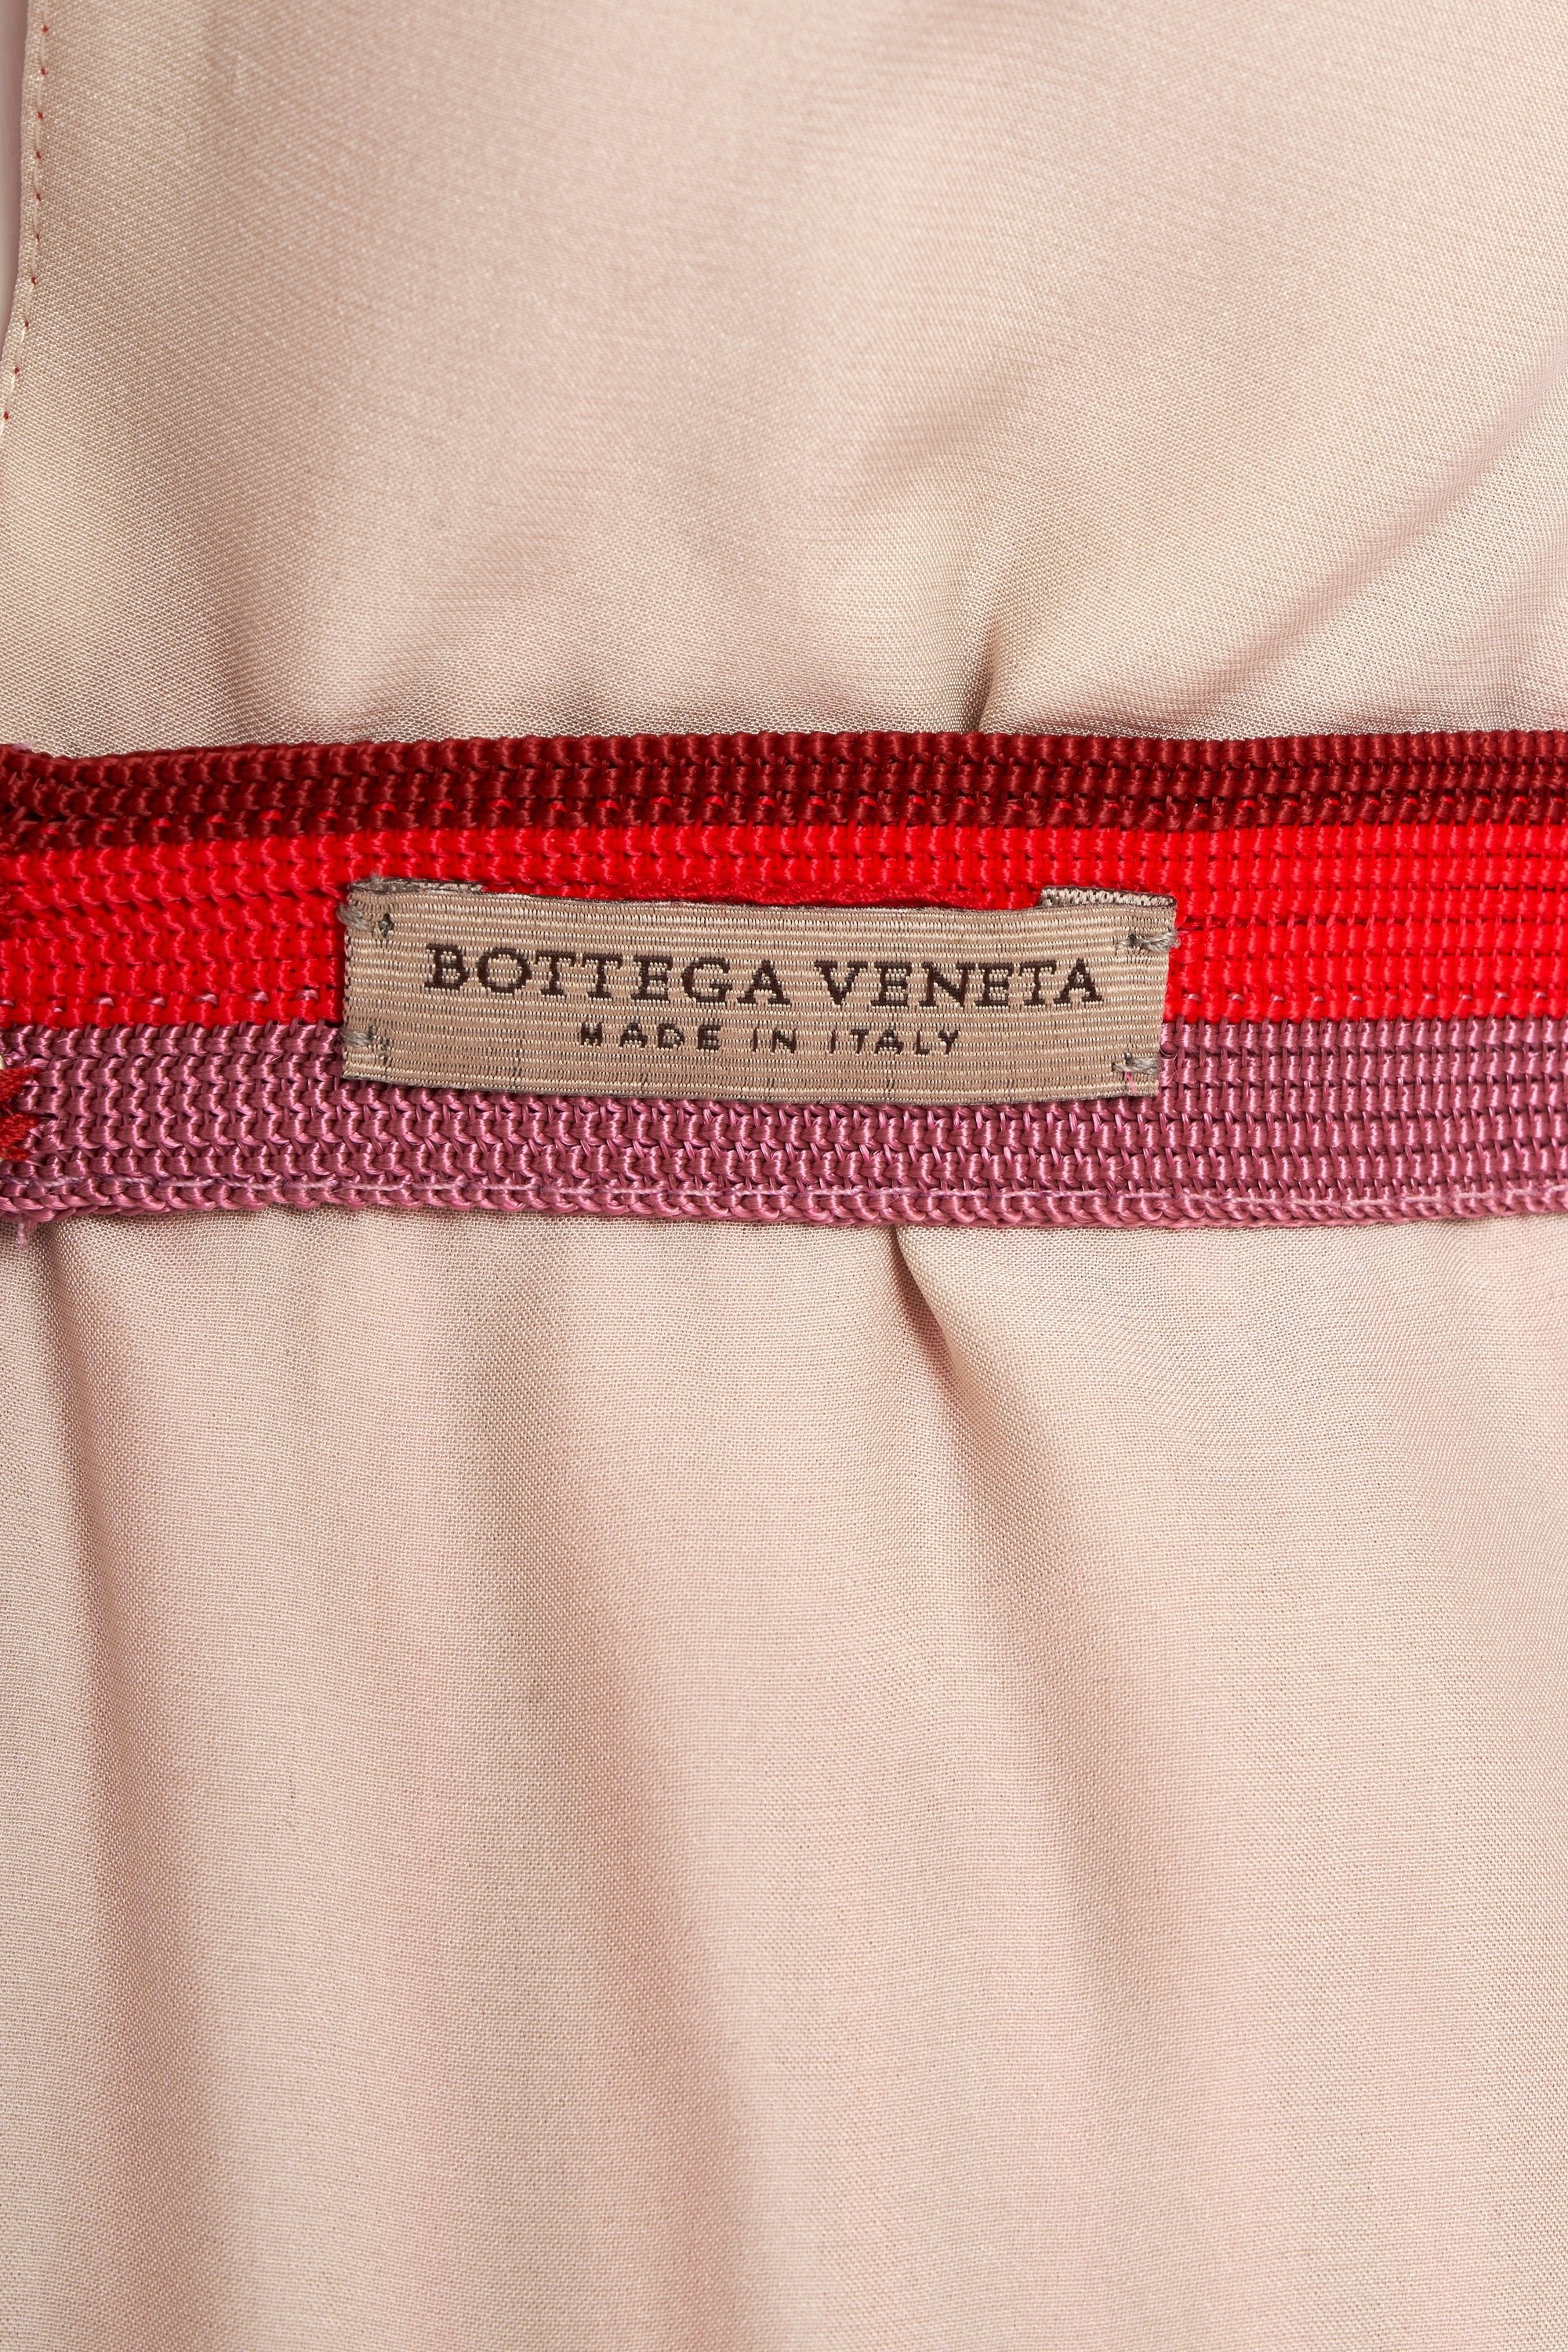 Bottega Veneta Pleated Red Dress